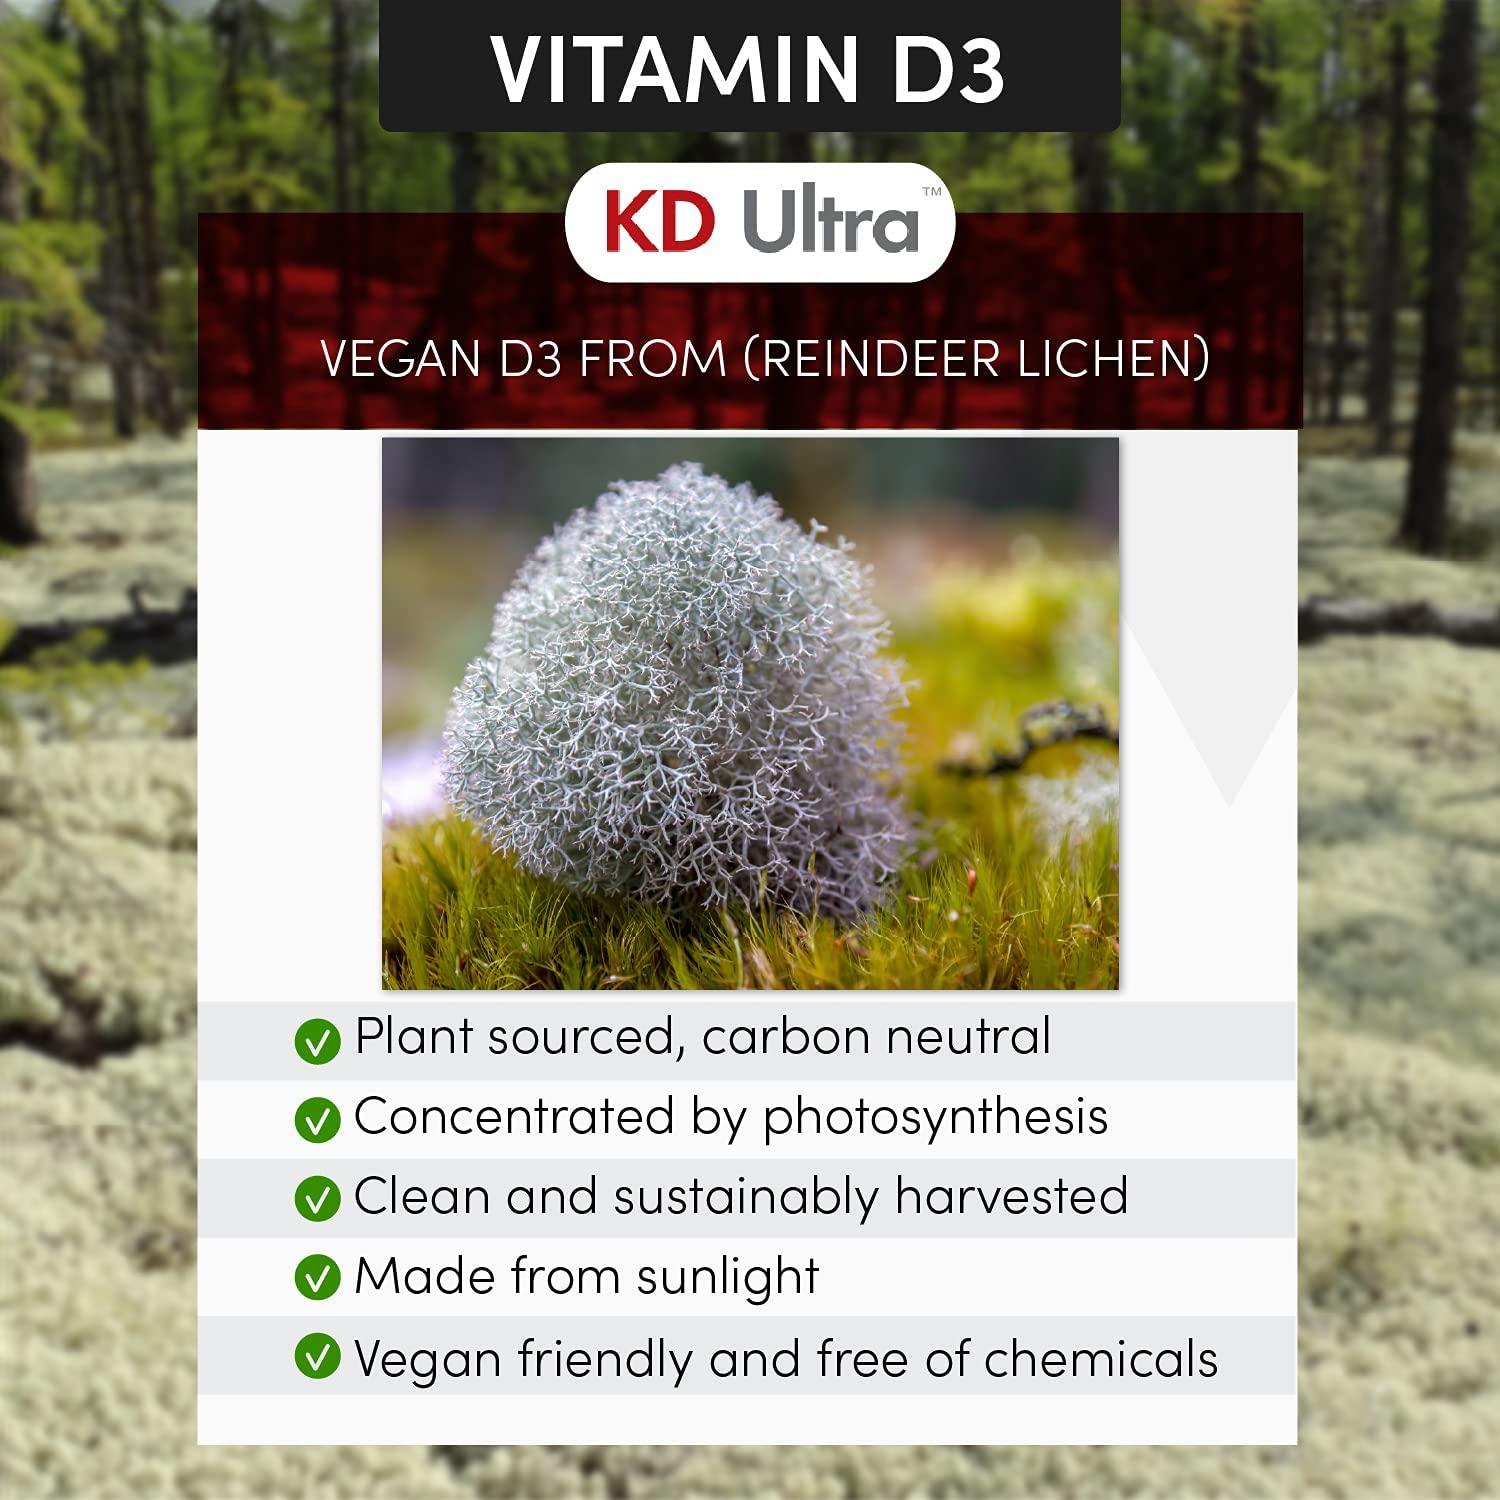 KD Ultra - Vitamin D3 + K2 Spectrum (Vegan)